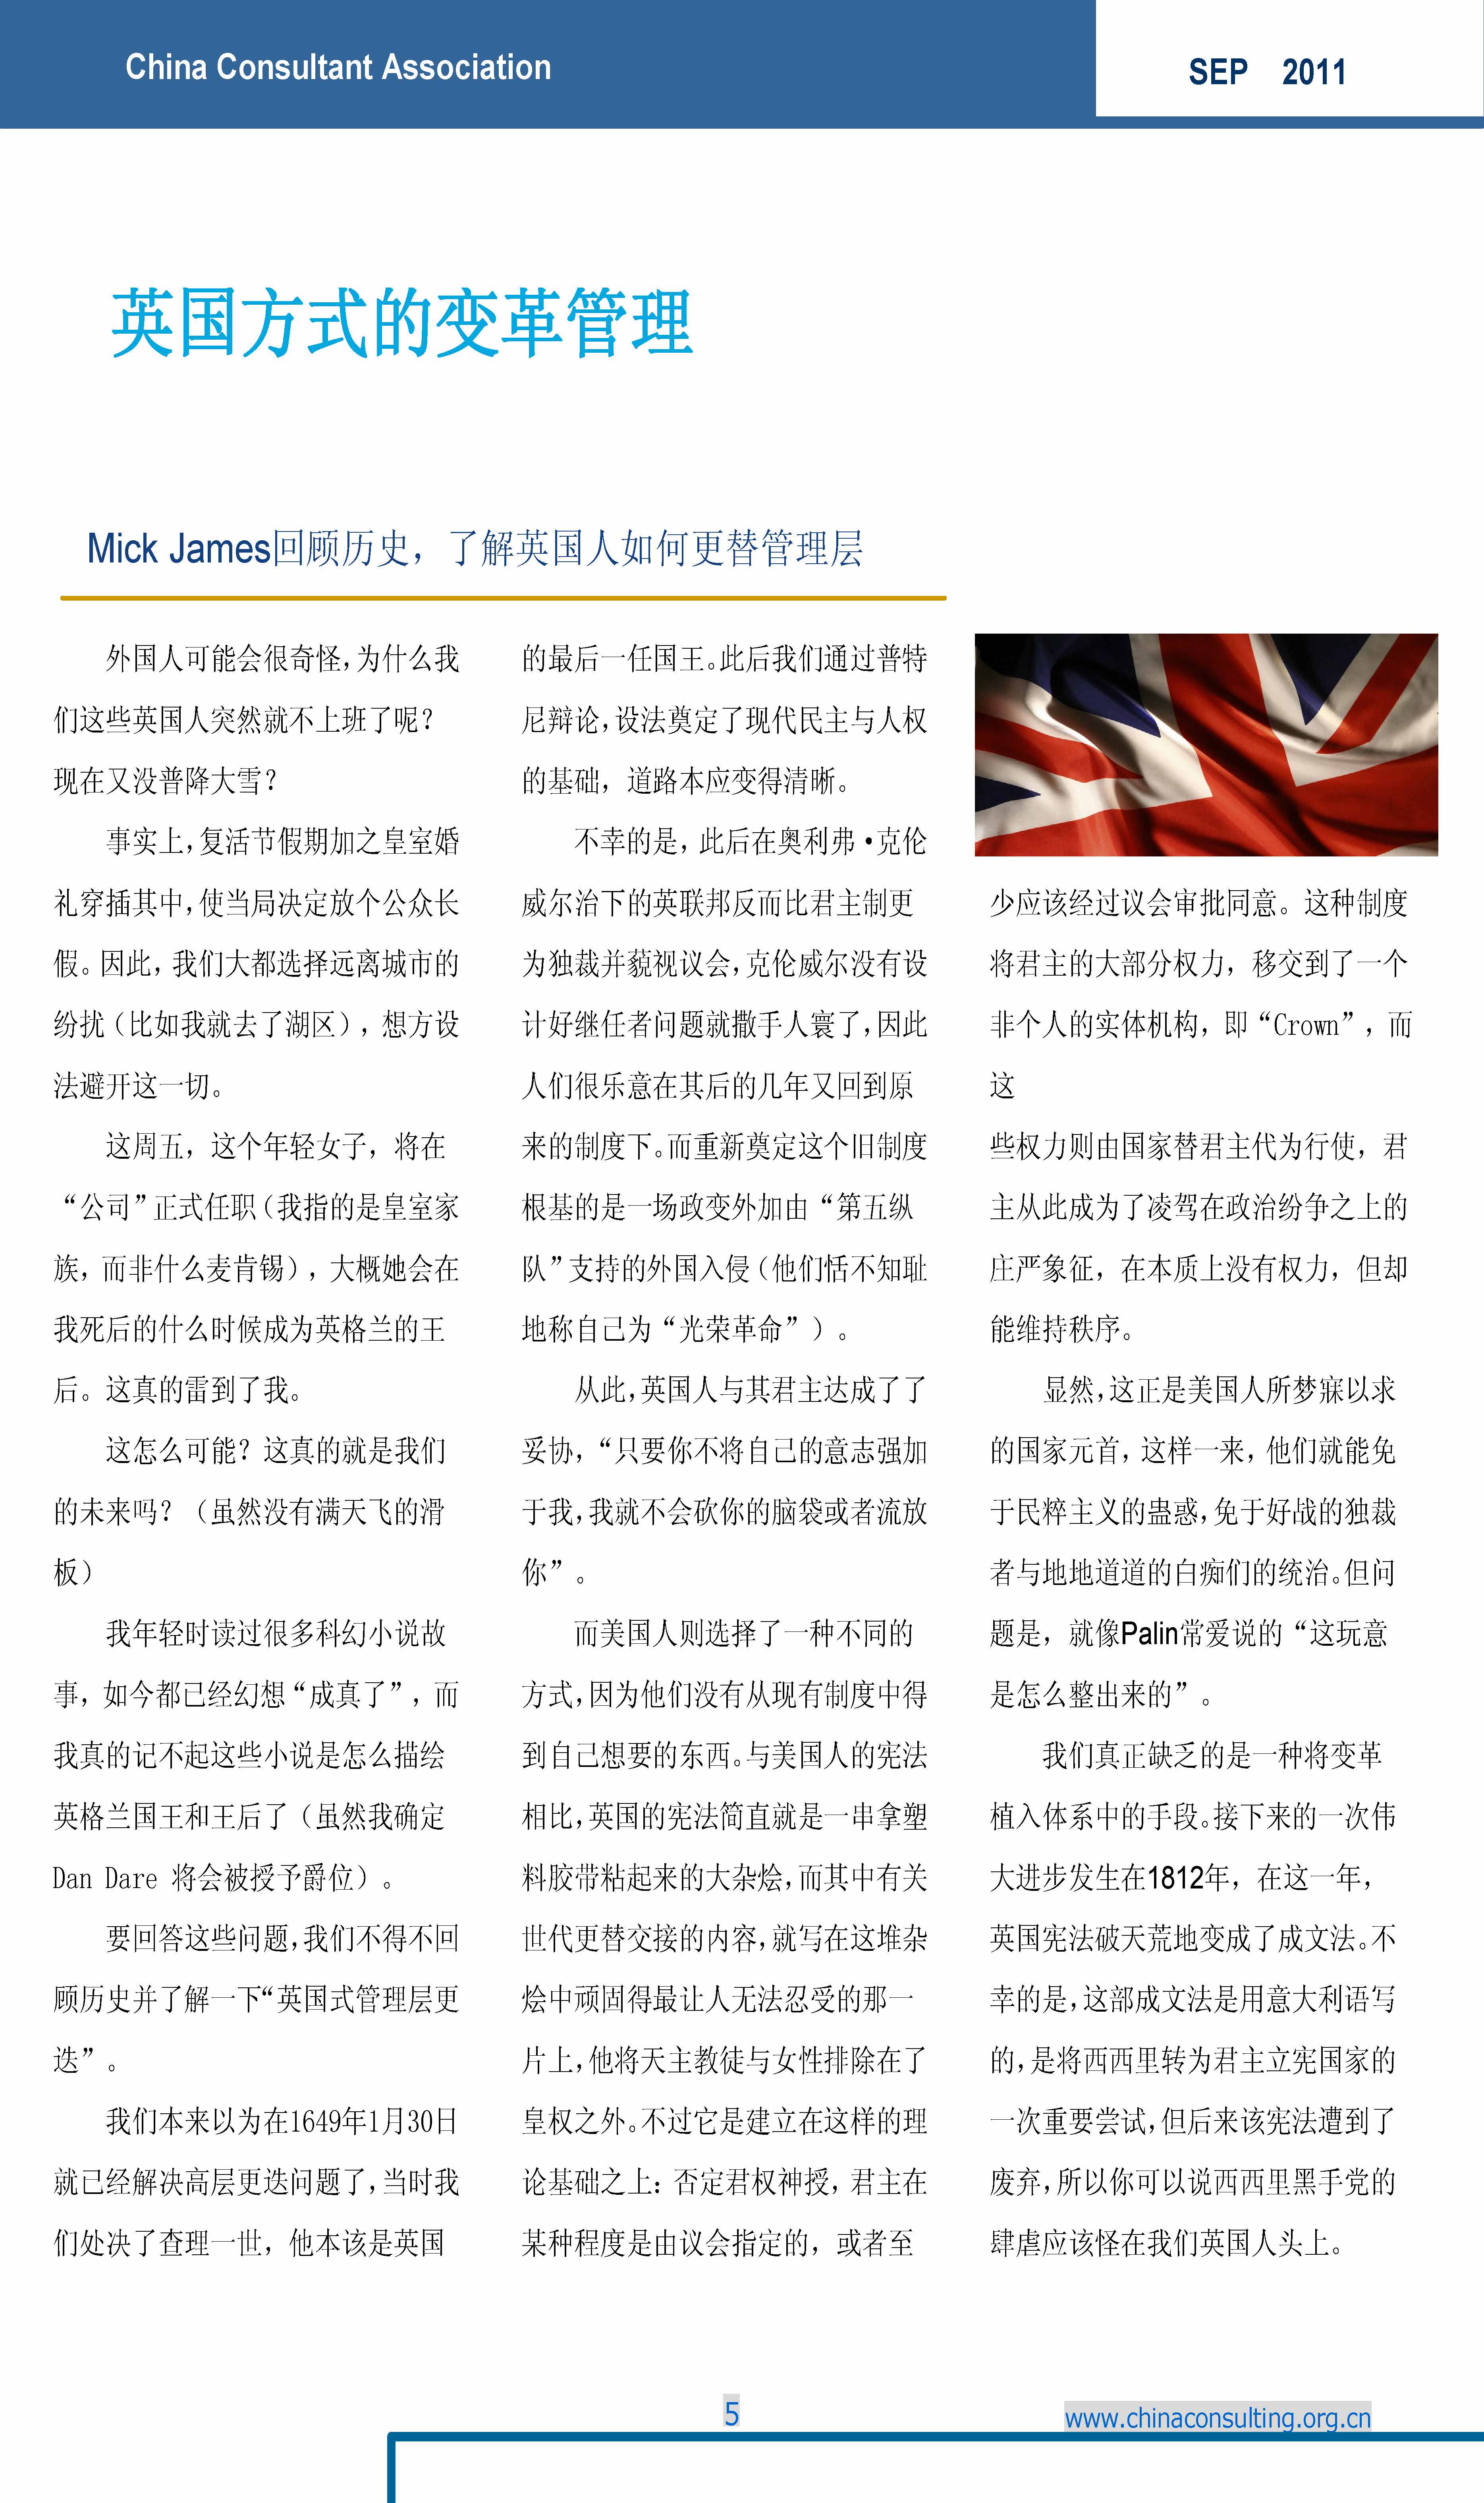 3中国科技咨询协会国际快讯（第三期）_页面_07.jpg